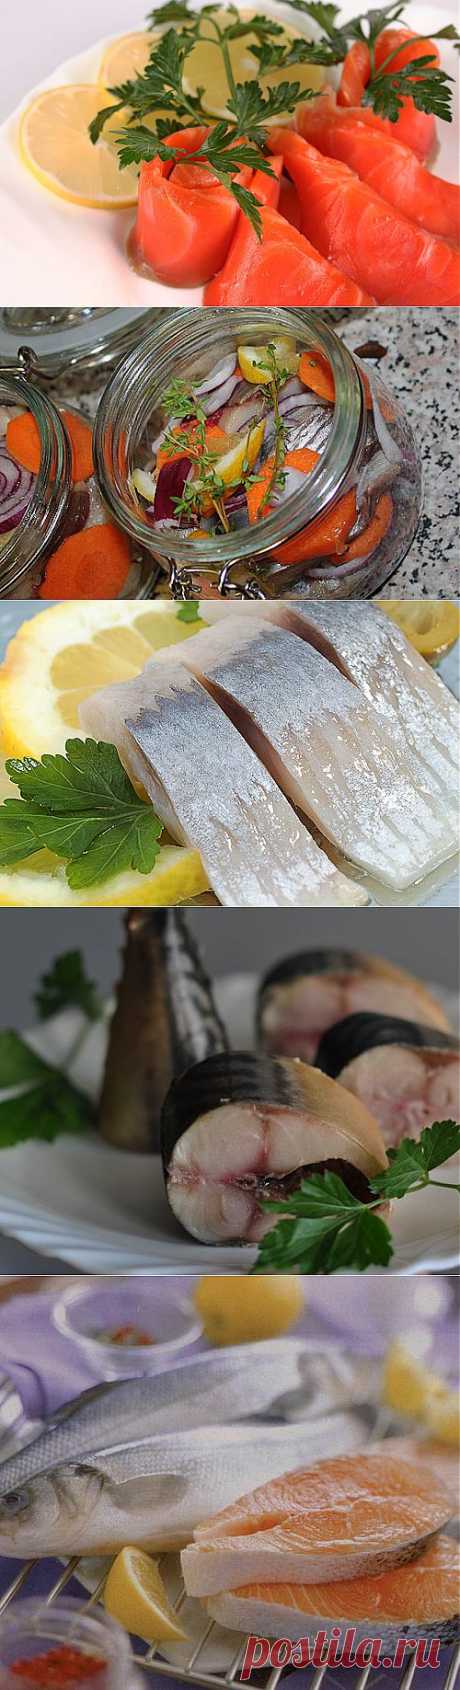 9 вкусных маринадов для рыбы | ЖЕНСКИЙ МИР